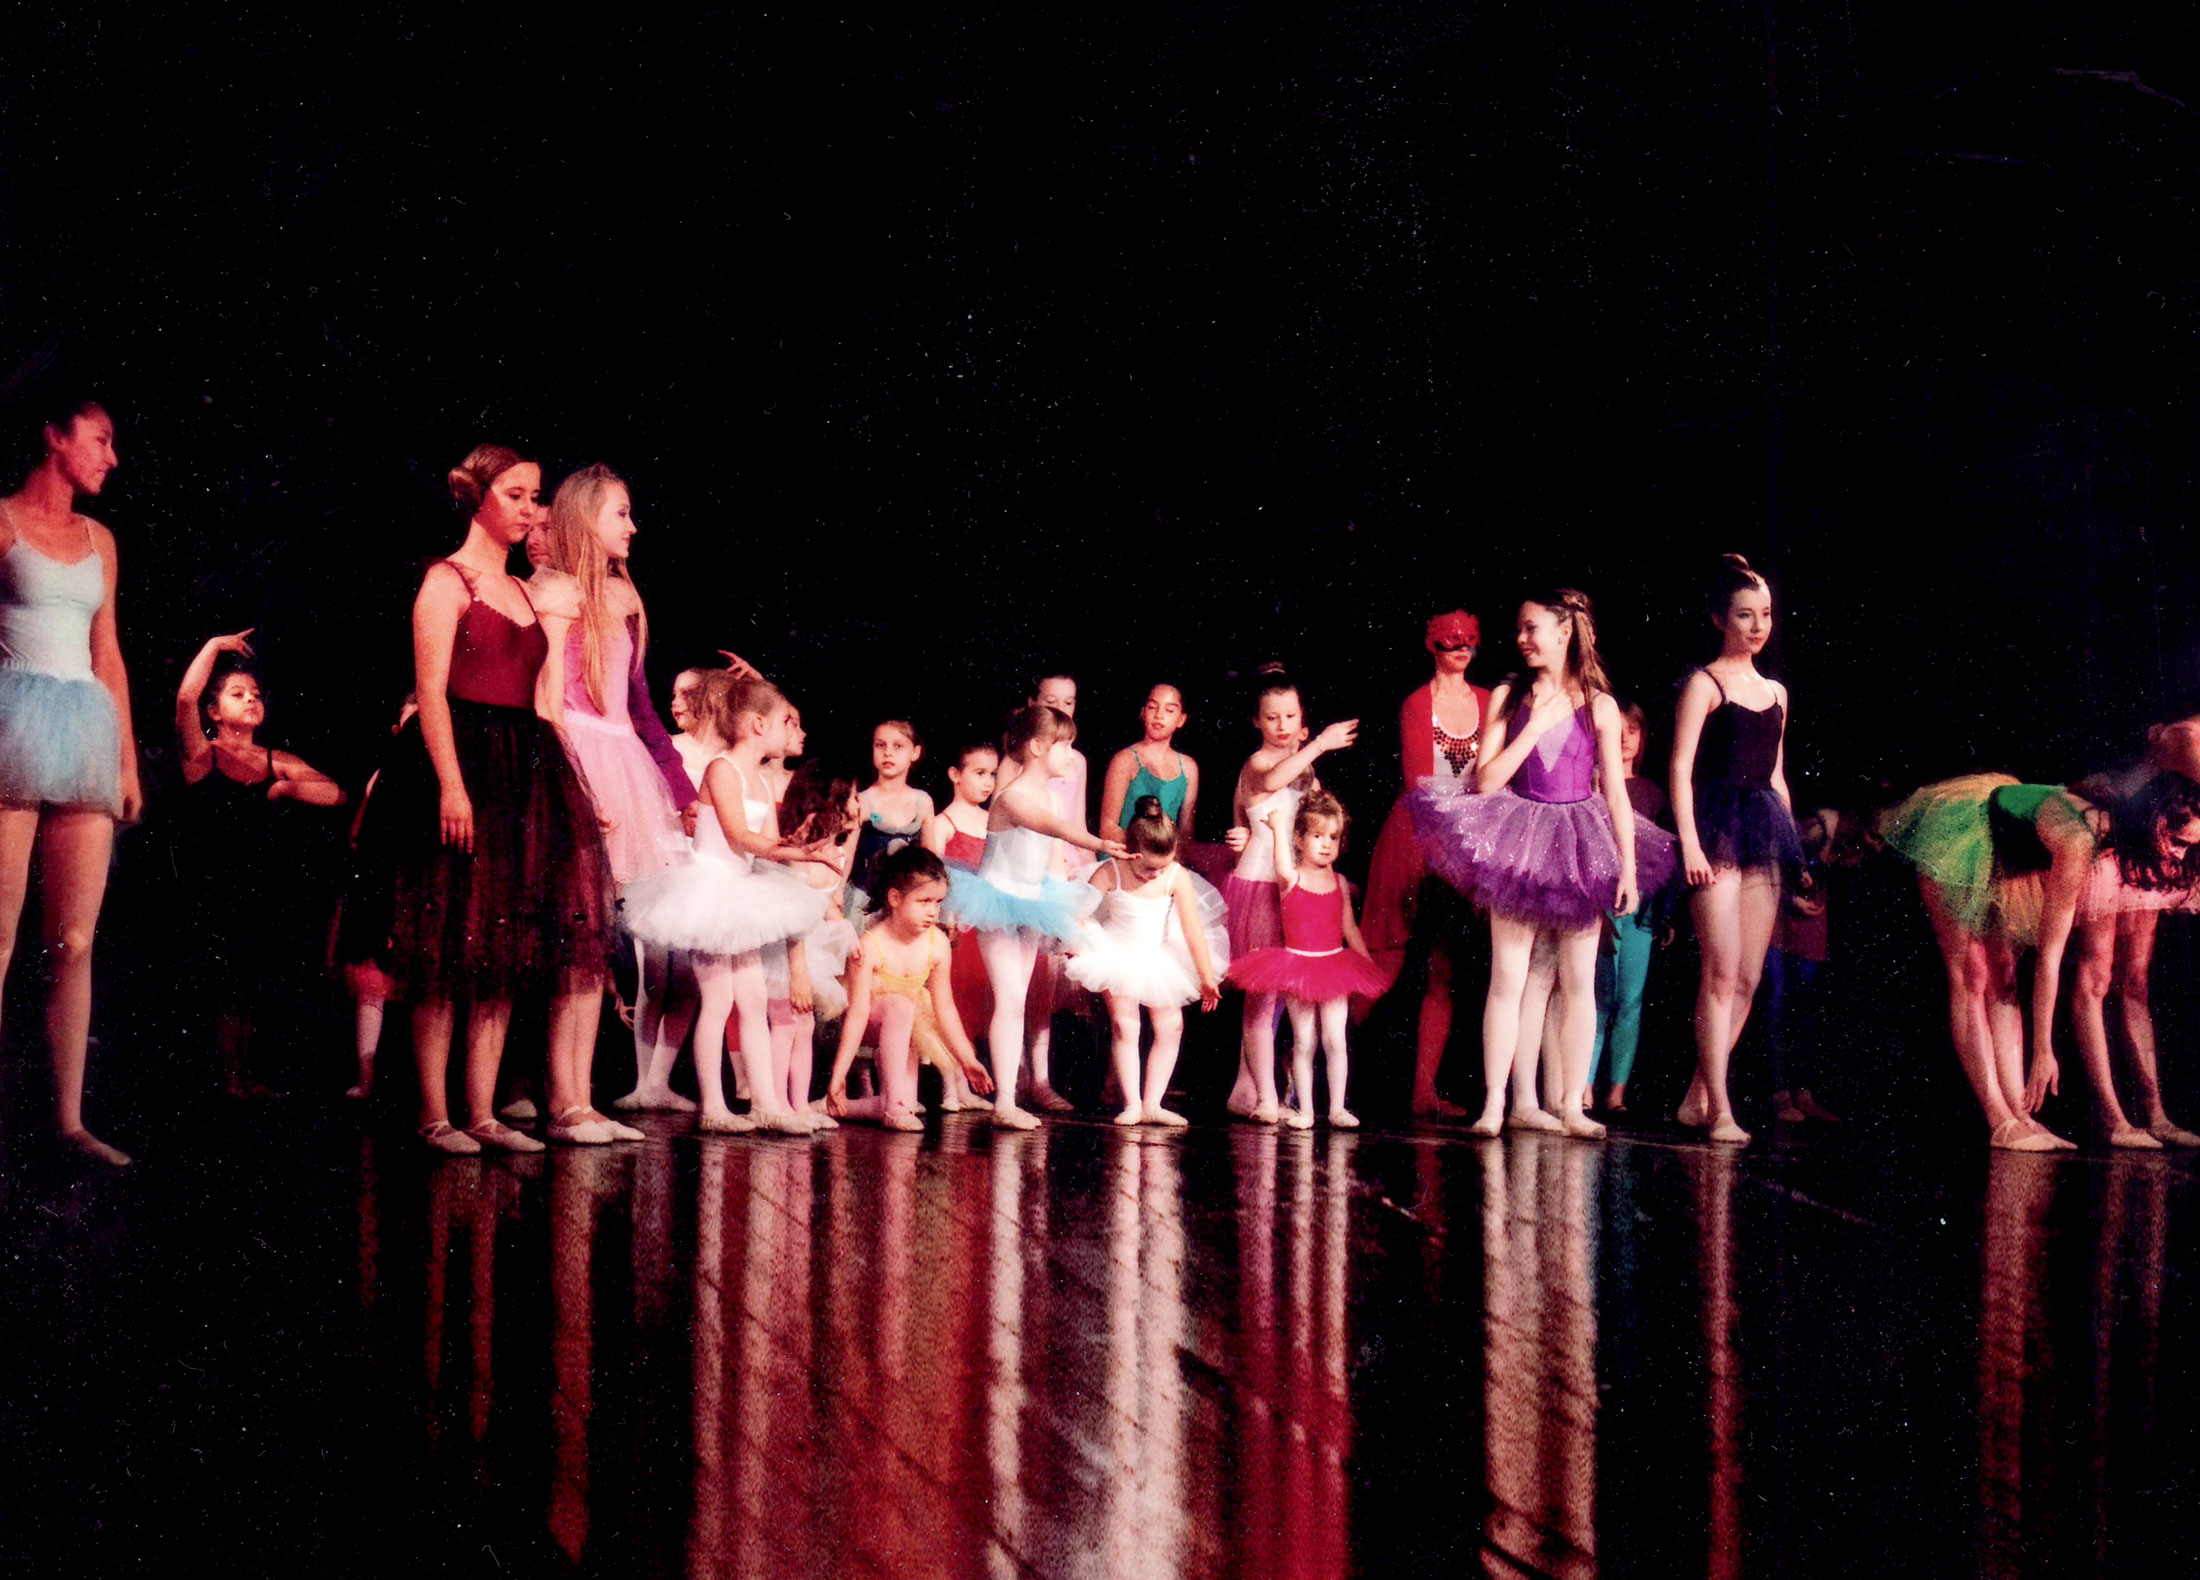 Baletska škola Studio Armiani